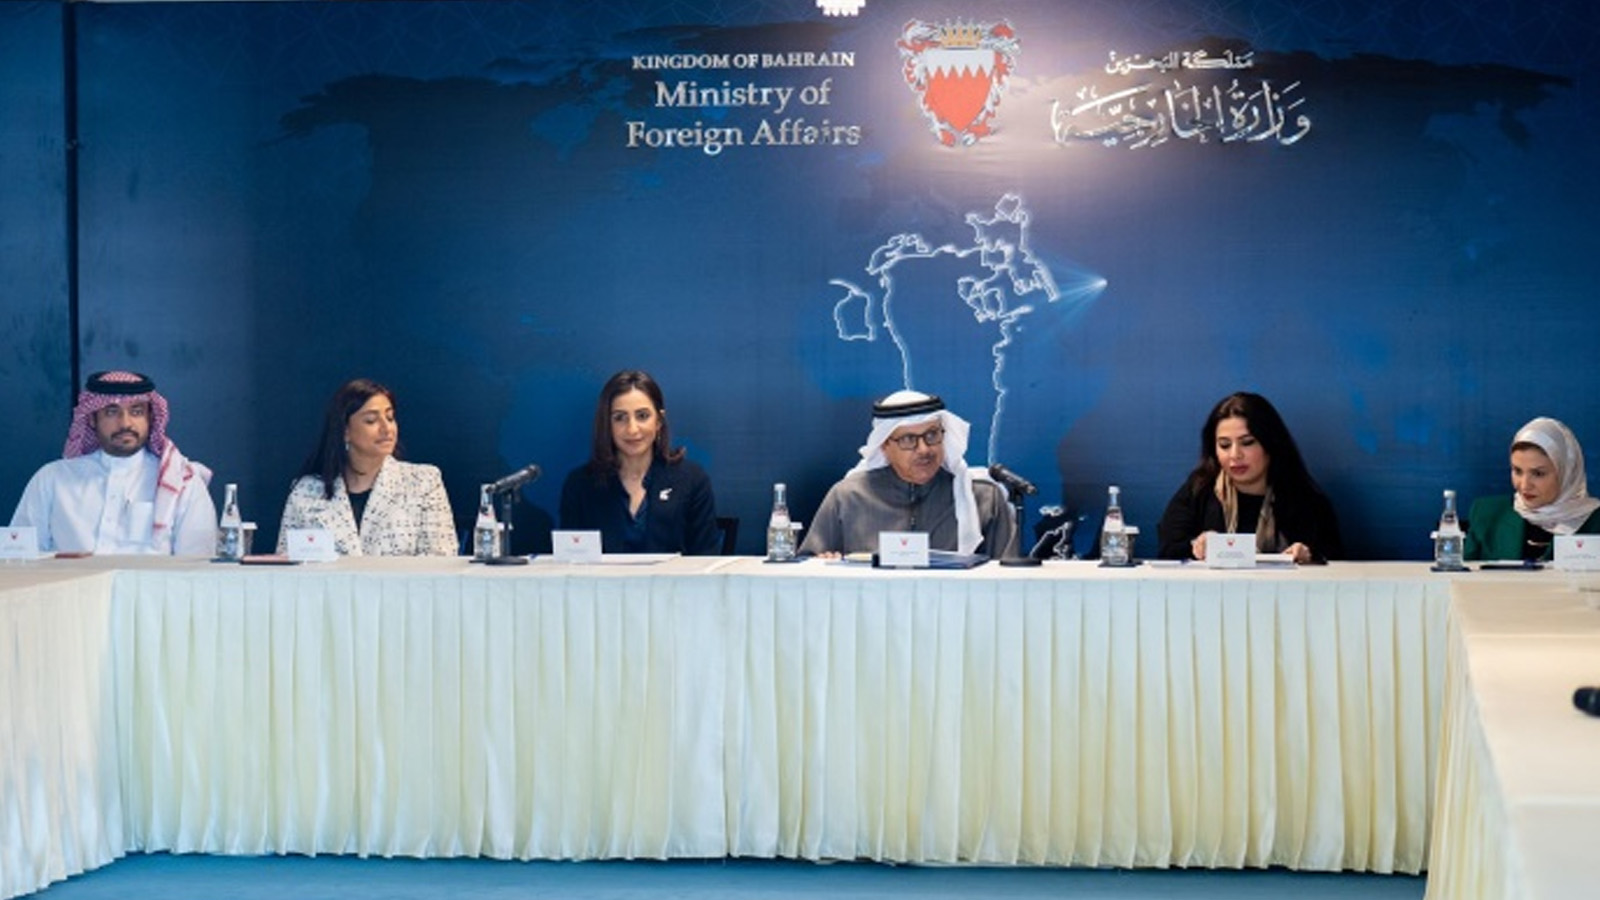 لقطة من اجتماع لجنة حقوق الانسان في البحرين برئاسة وزير الخارجية عبداللطيف بن راشد الزياني